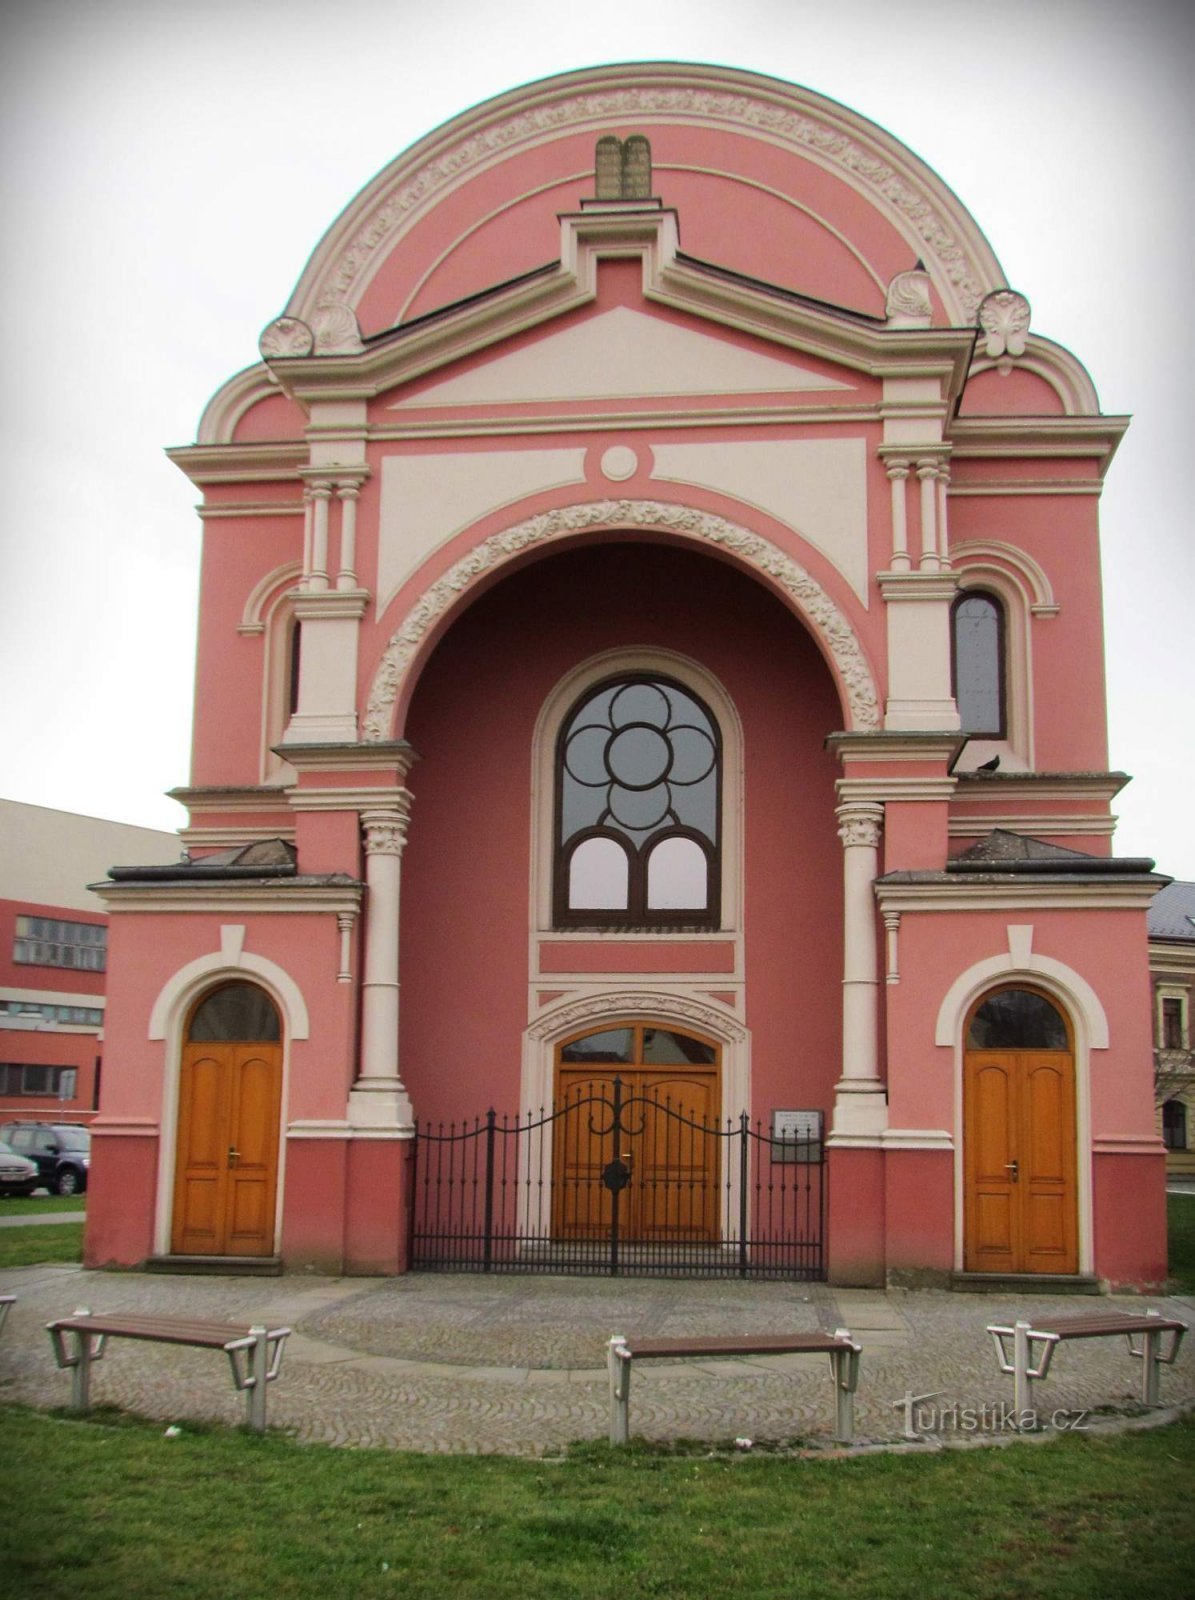 Uherské Hradiště - synagogue